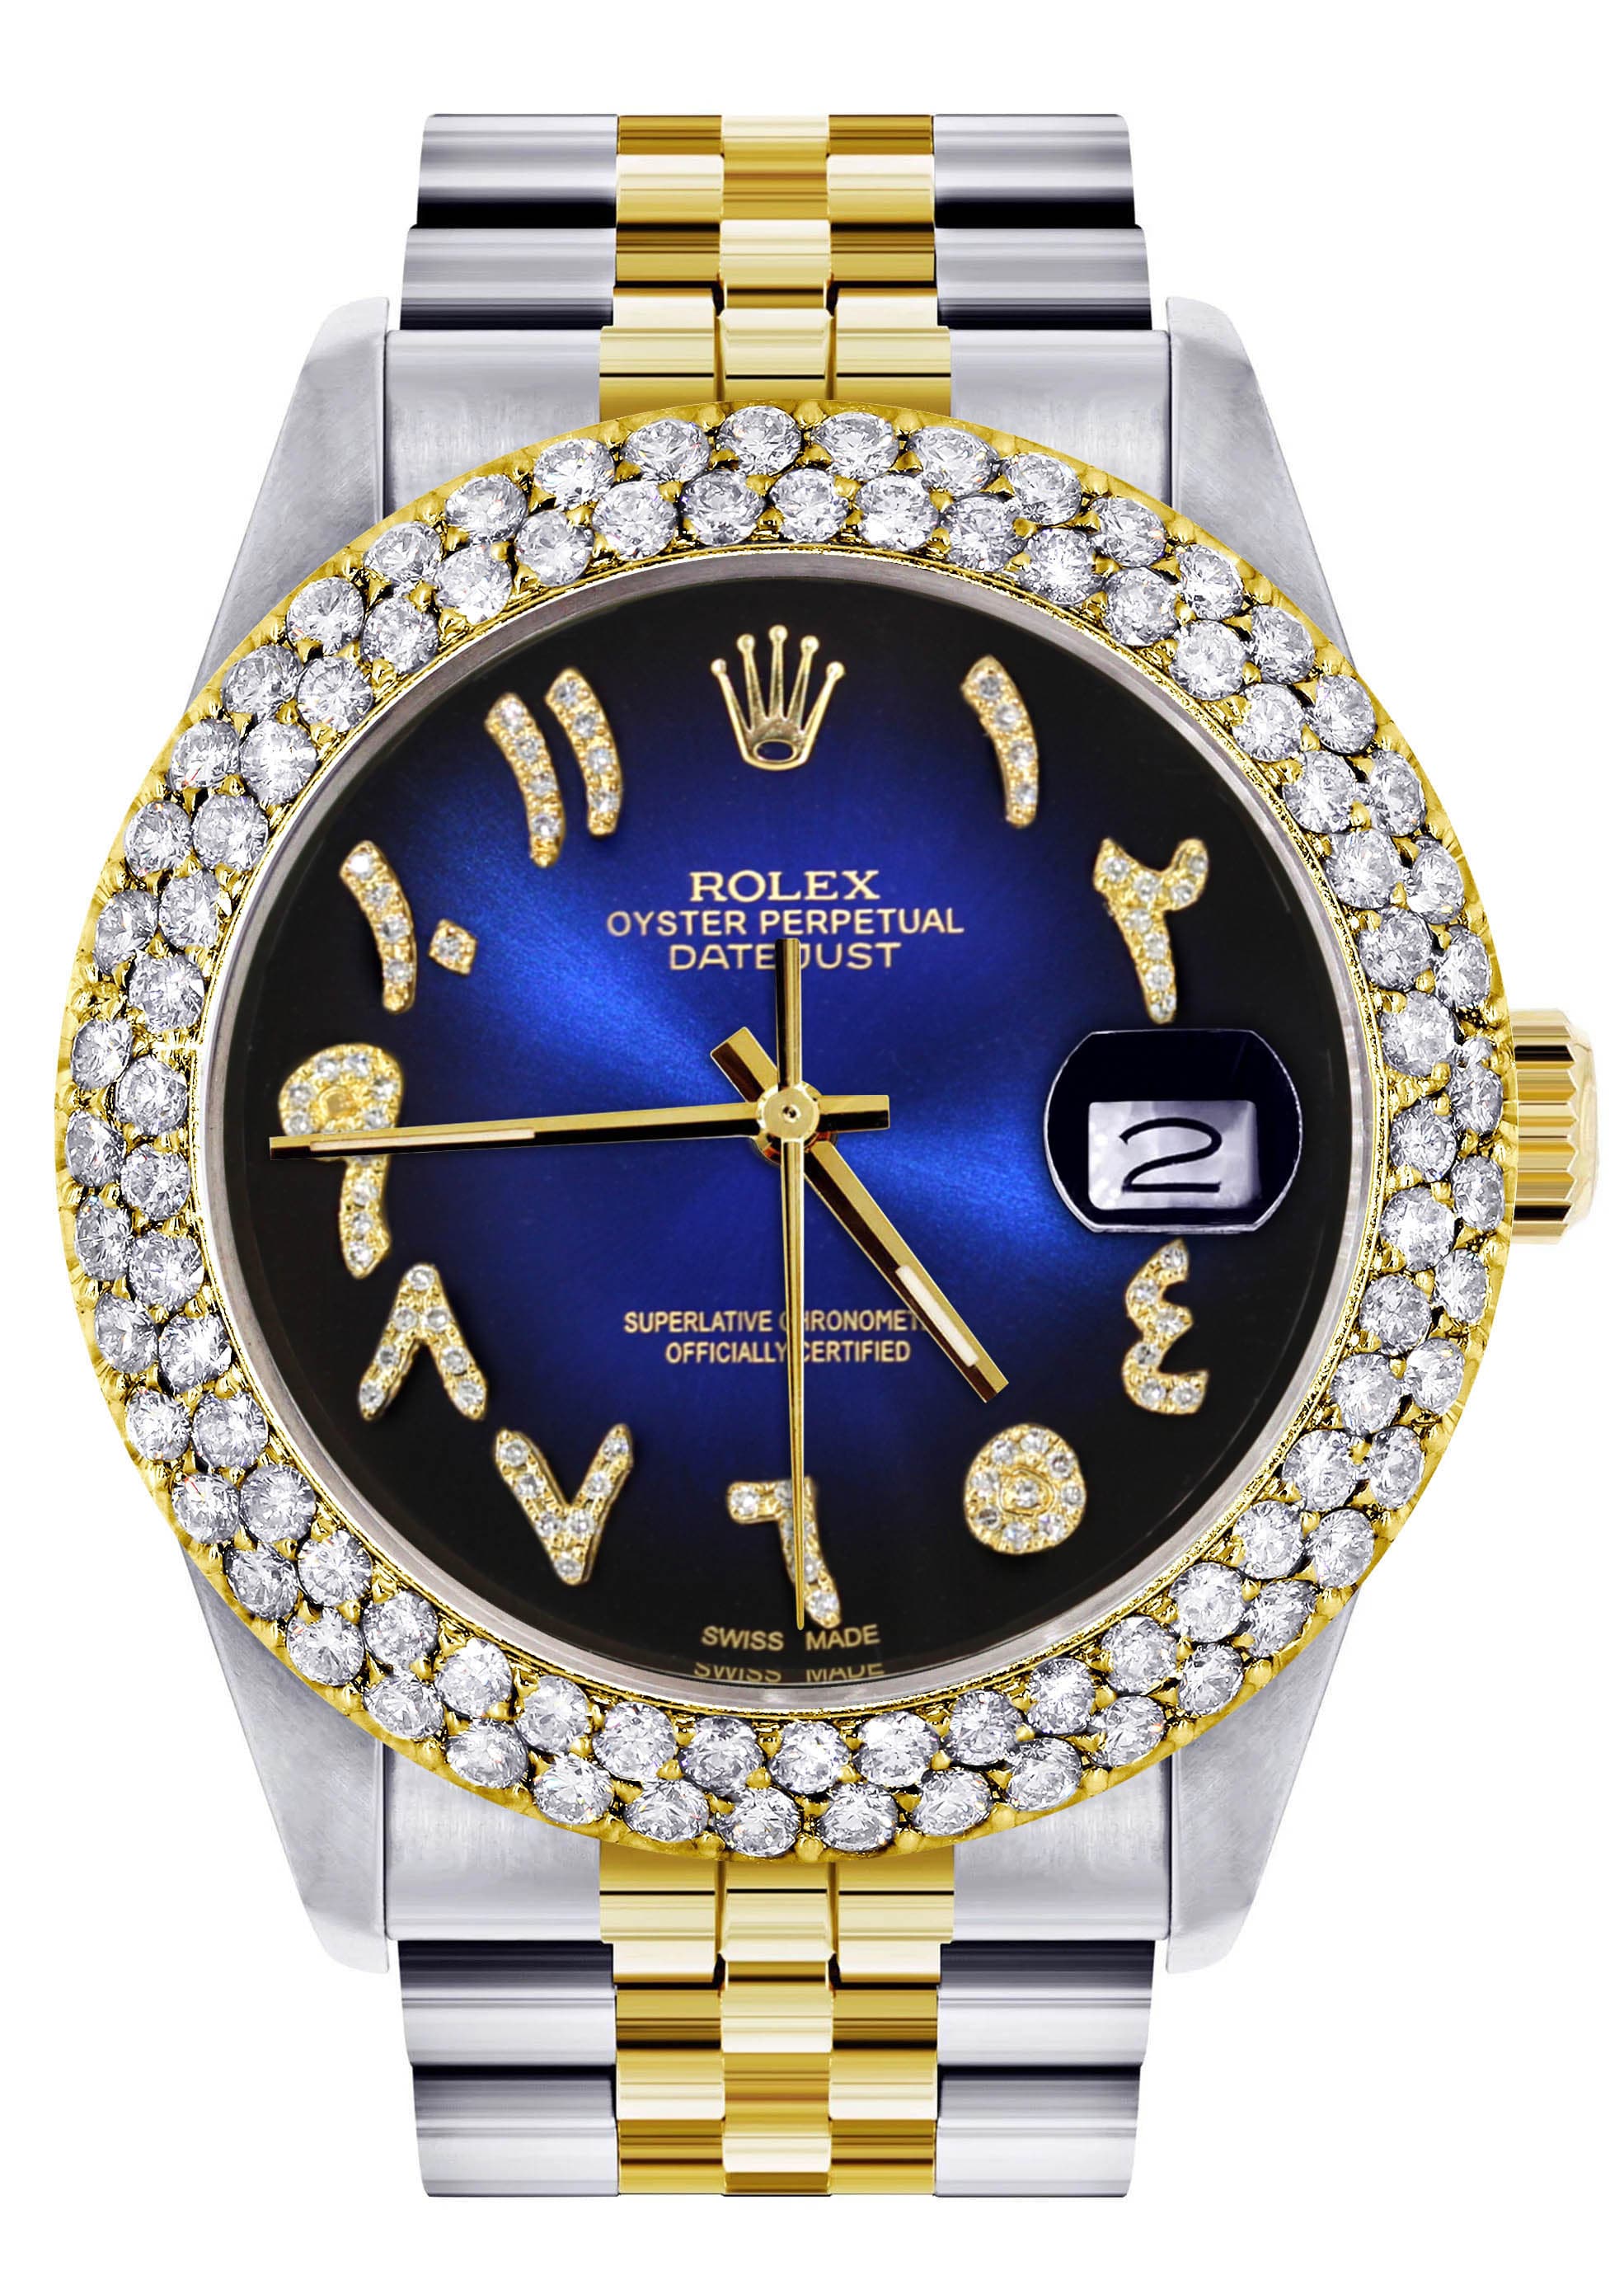 Compre Iced out relógio masculino marca de luxo cheio diamante